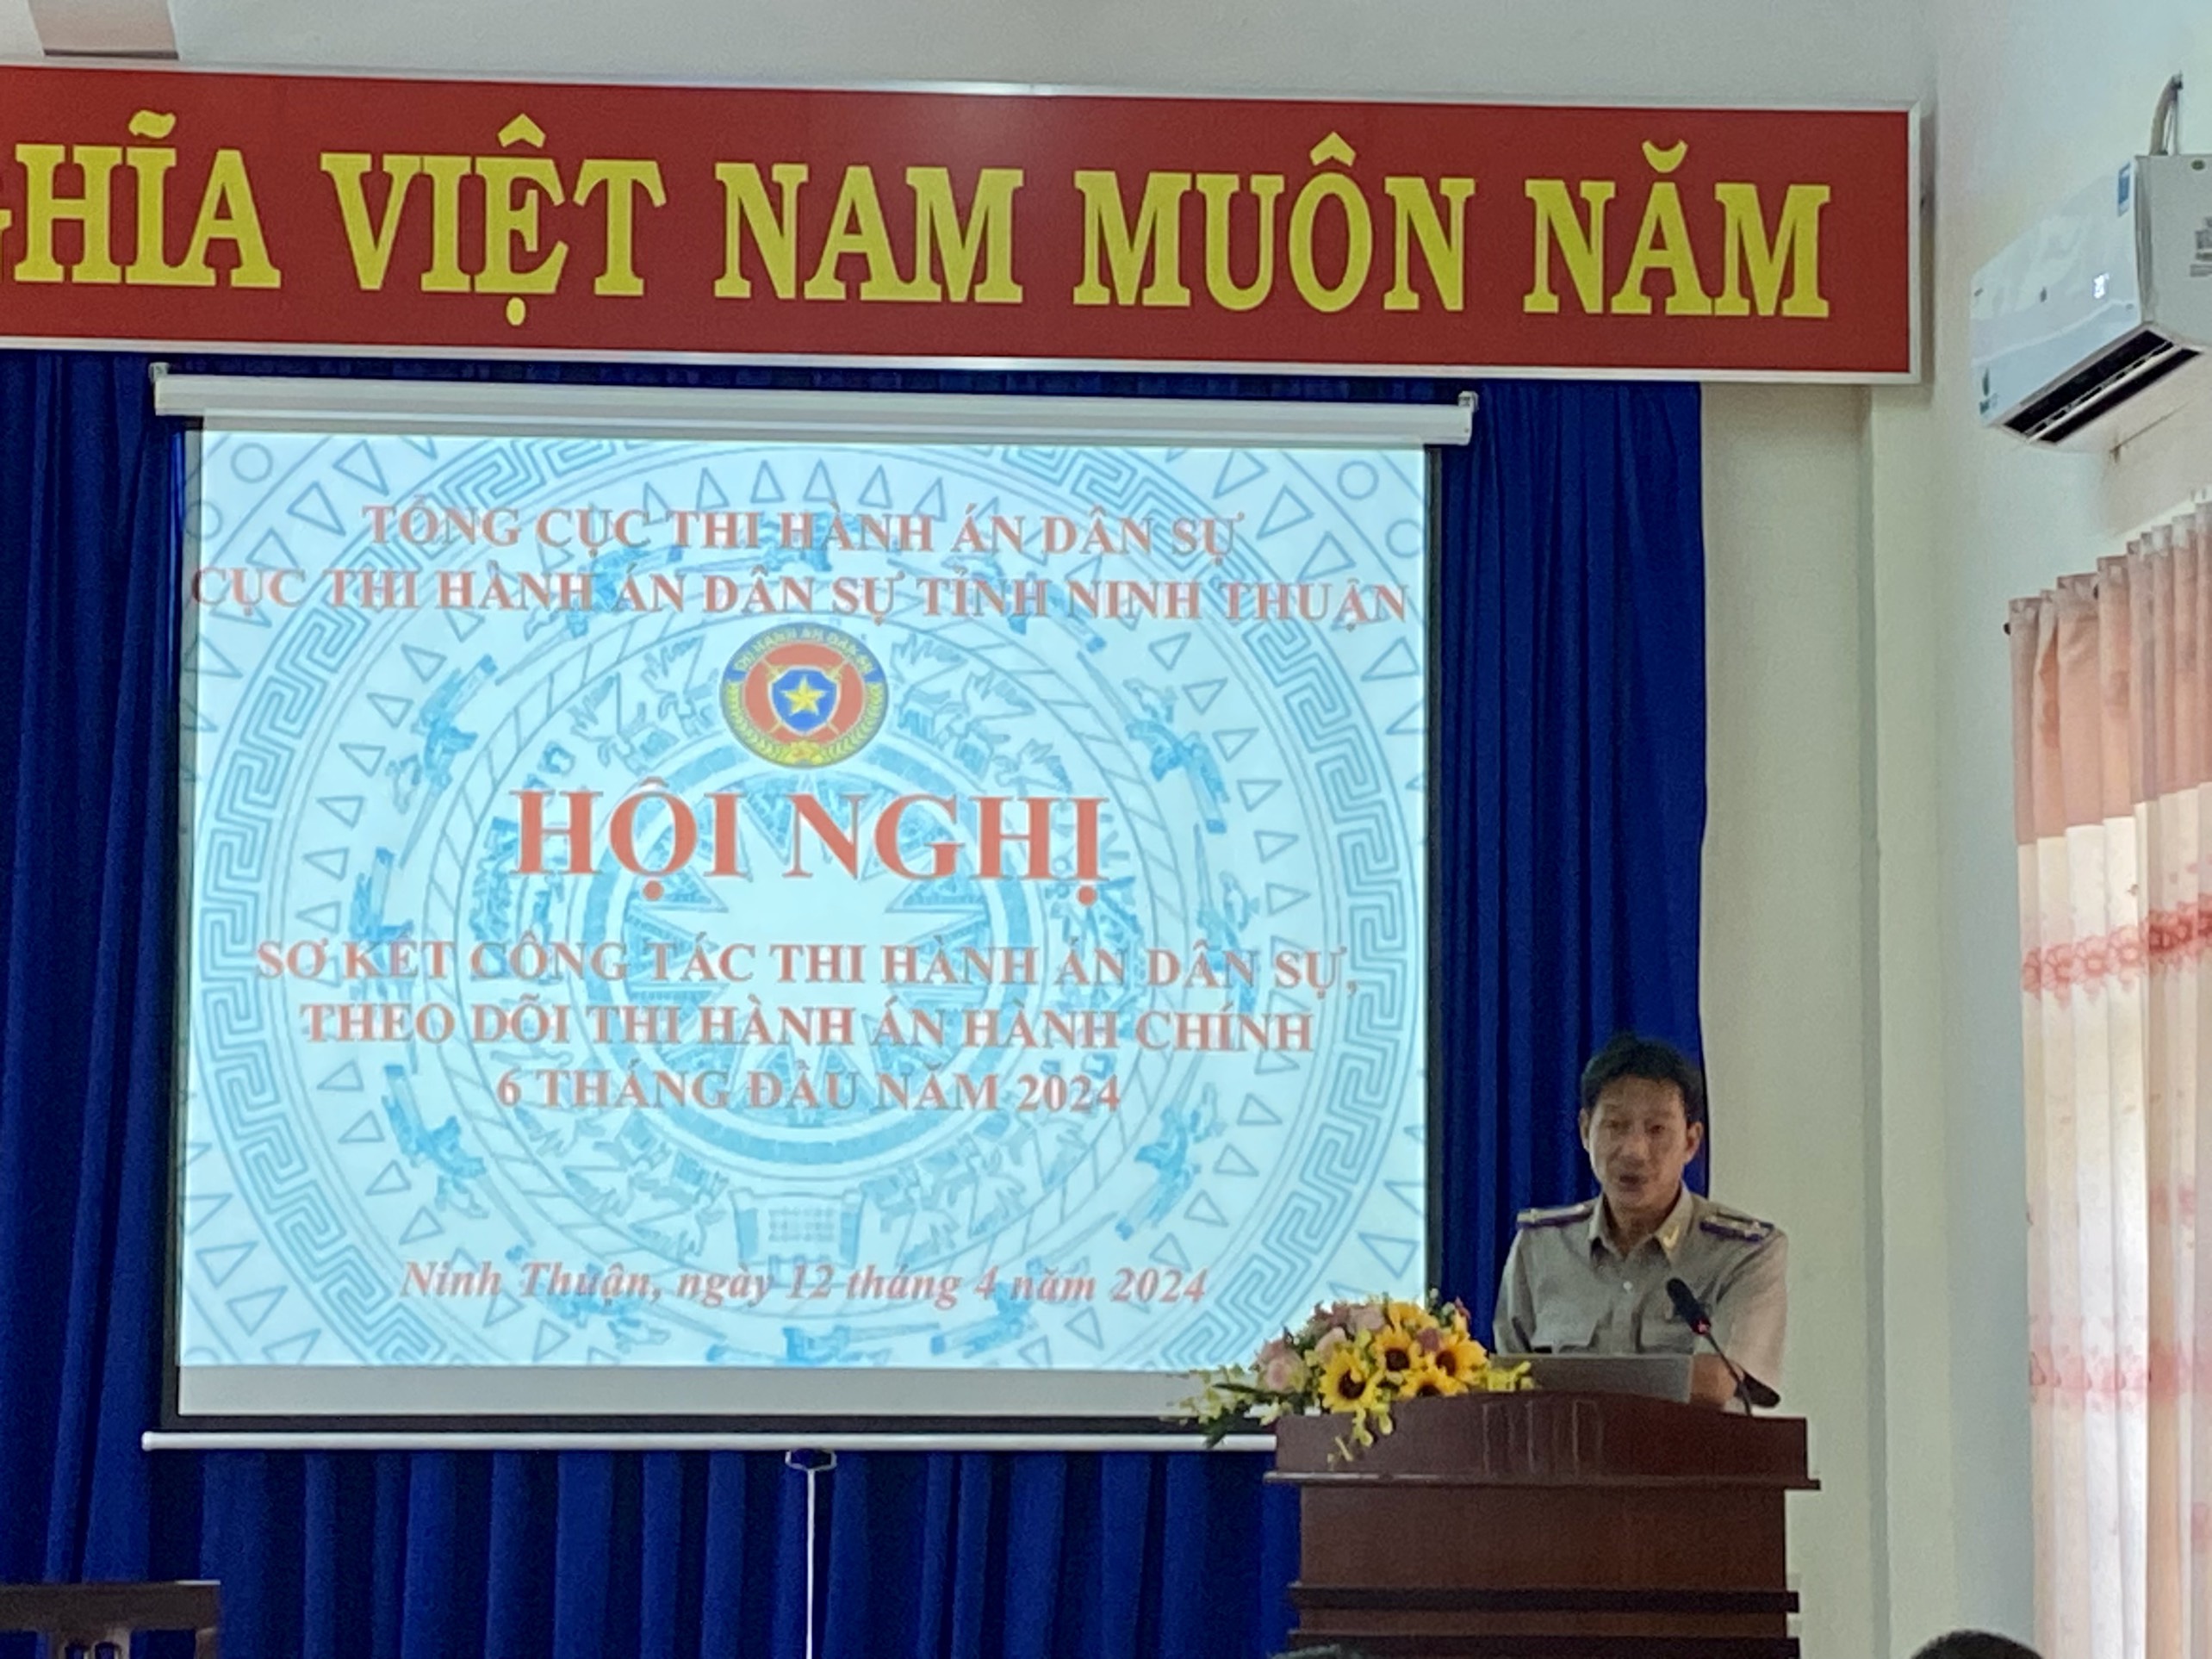 Cục Thi hành án dân sự tỉnh Ninh Thuận tổ chức Hội nghị sơ kết công tác THADS, theo dõi THAHC 6 tháng đầu năm 2024